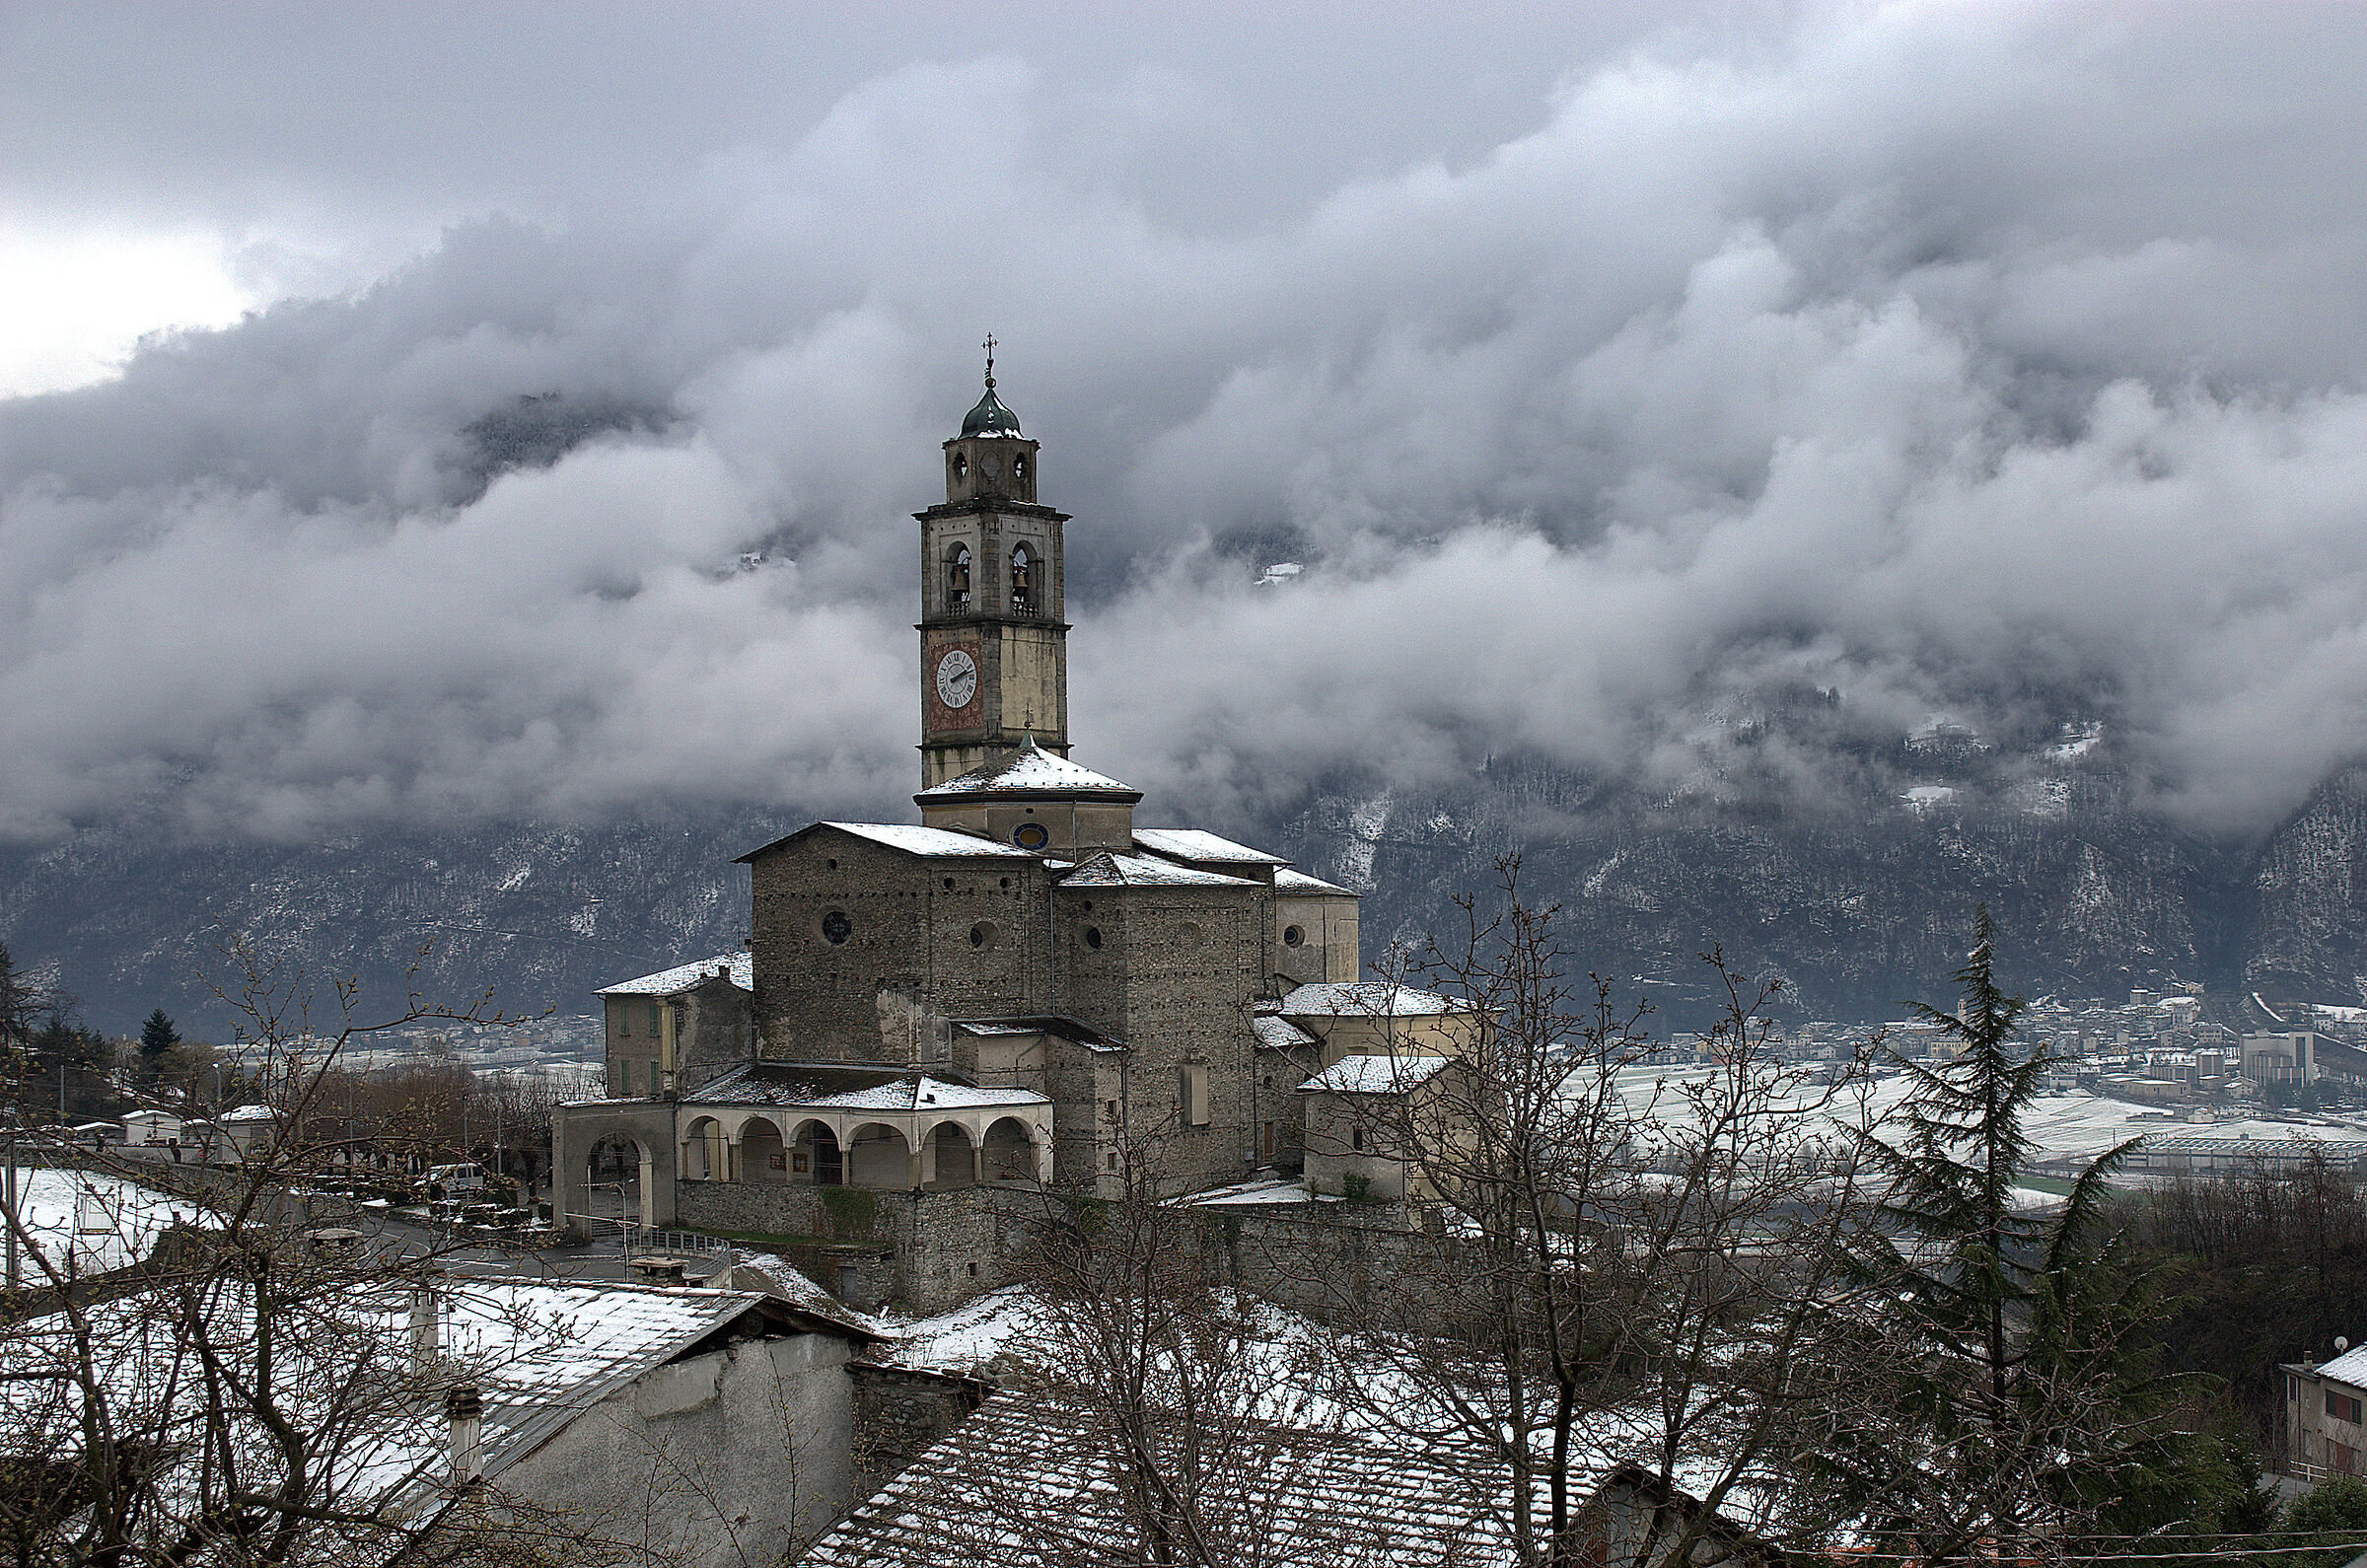 Church of Berbenno in Valtellina...